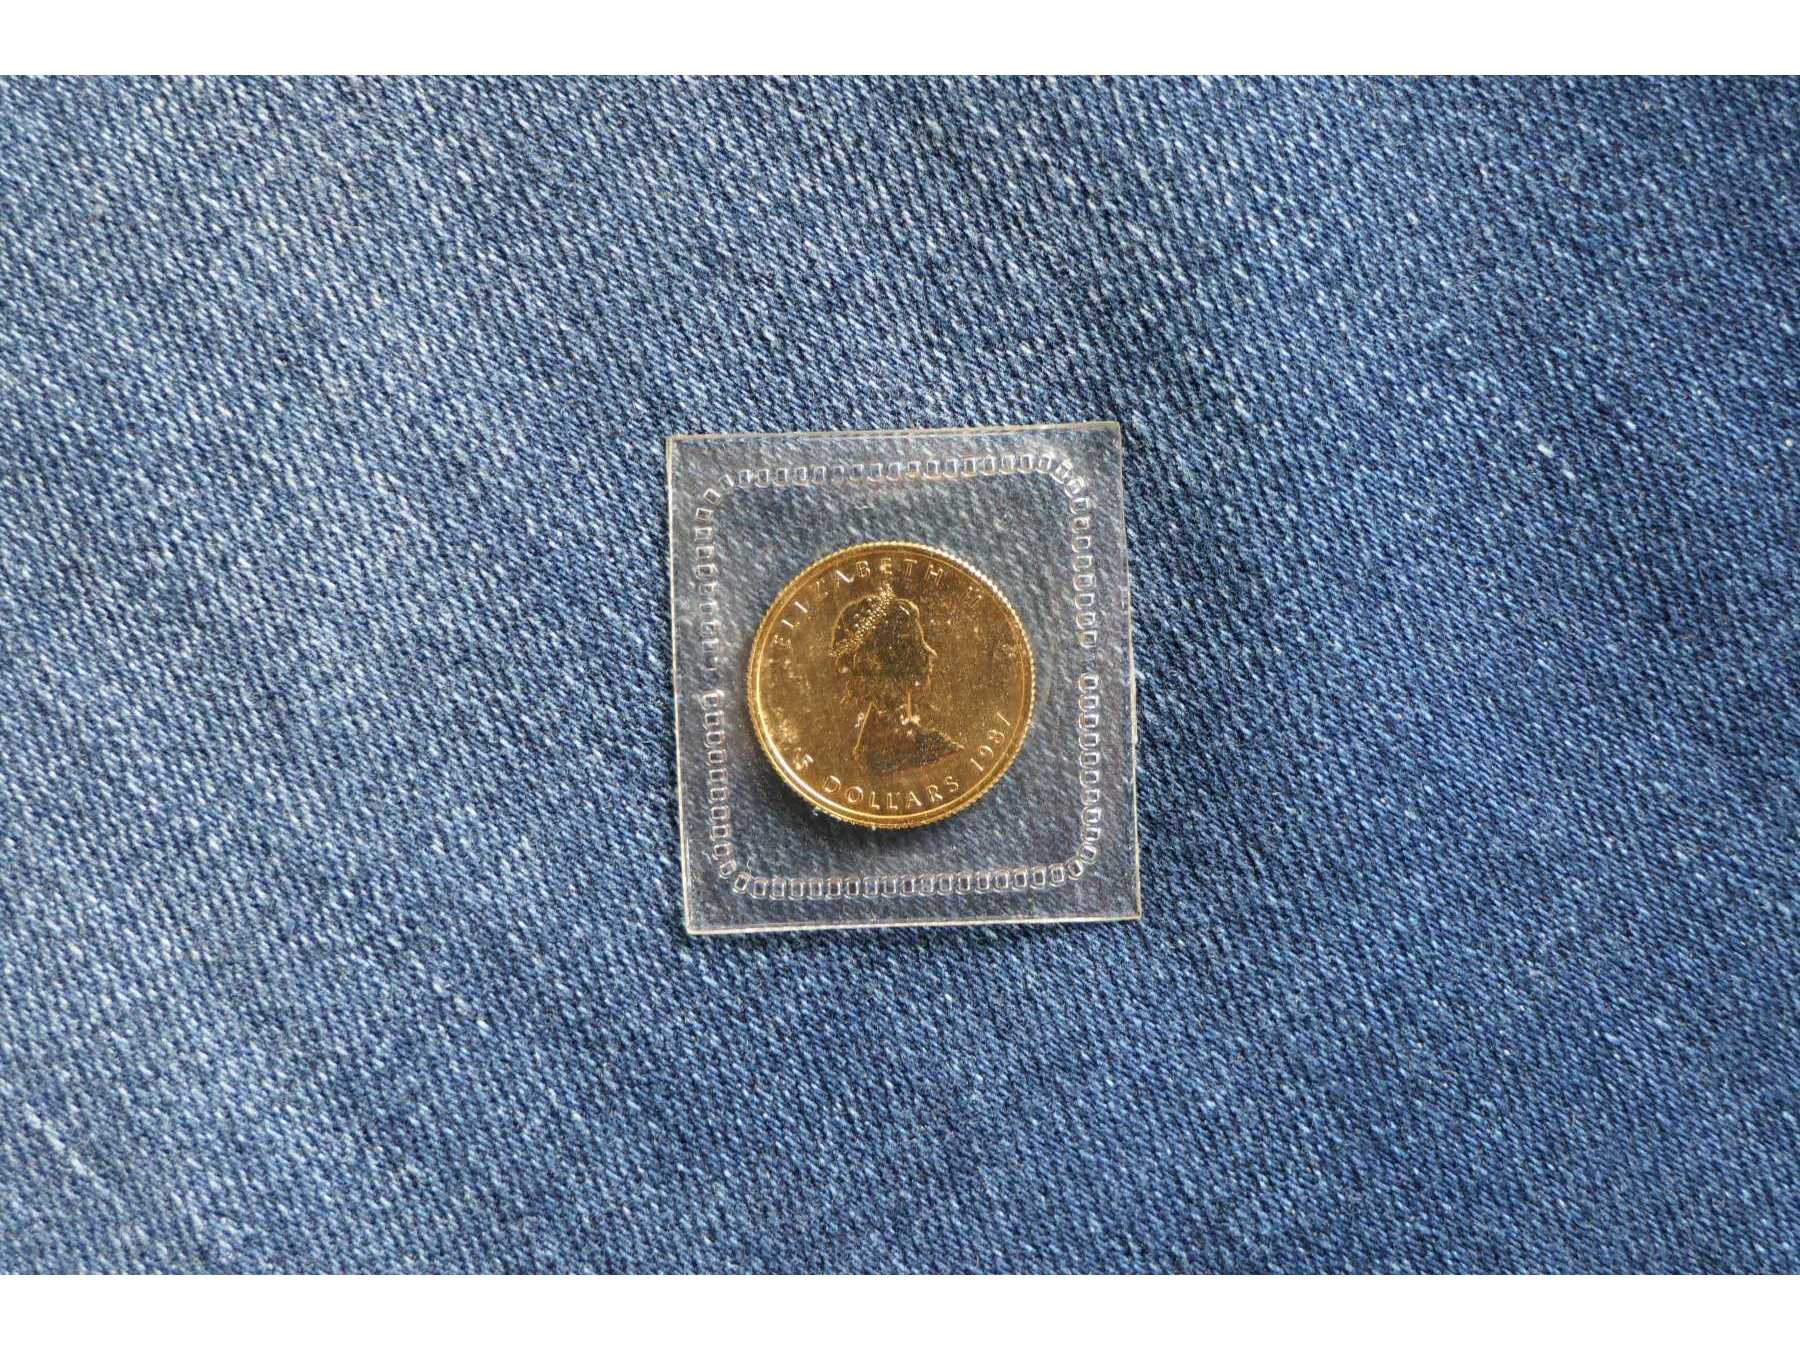 Rückseite der Münze mit Nennwert , Prägejahr und Unzeneinheit